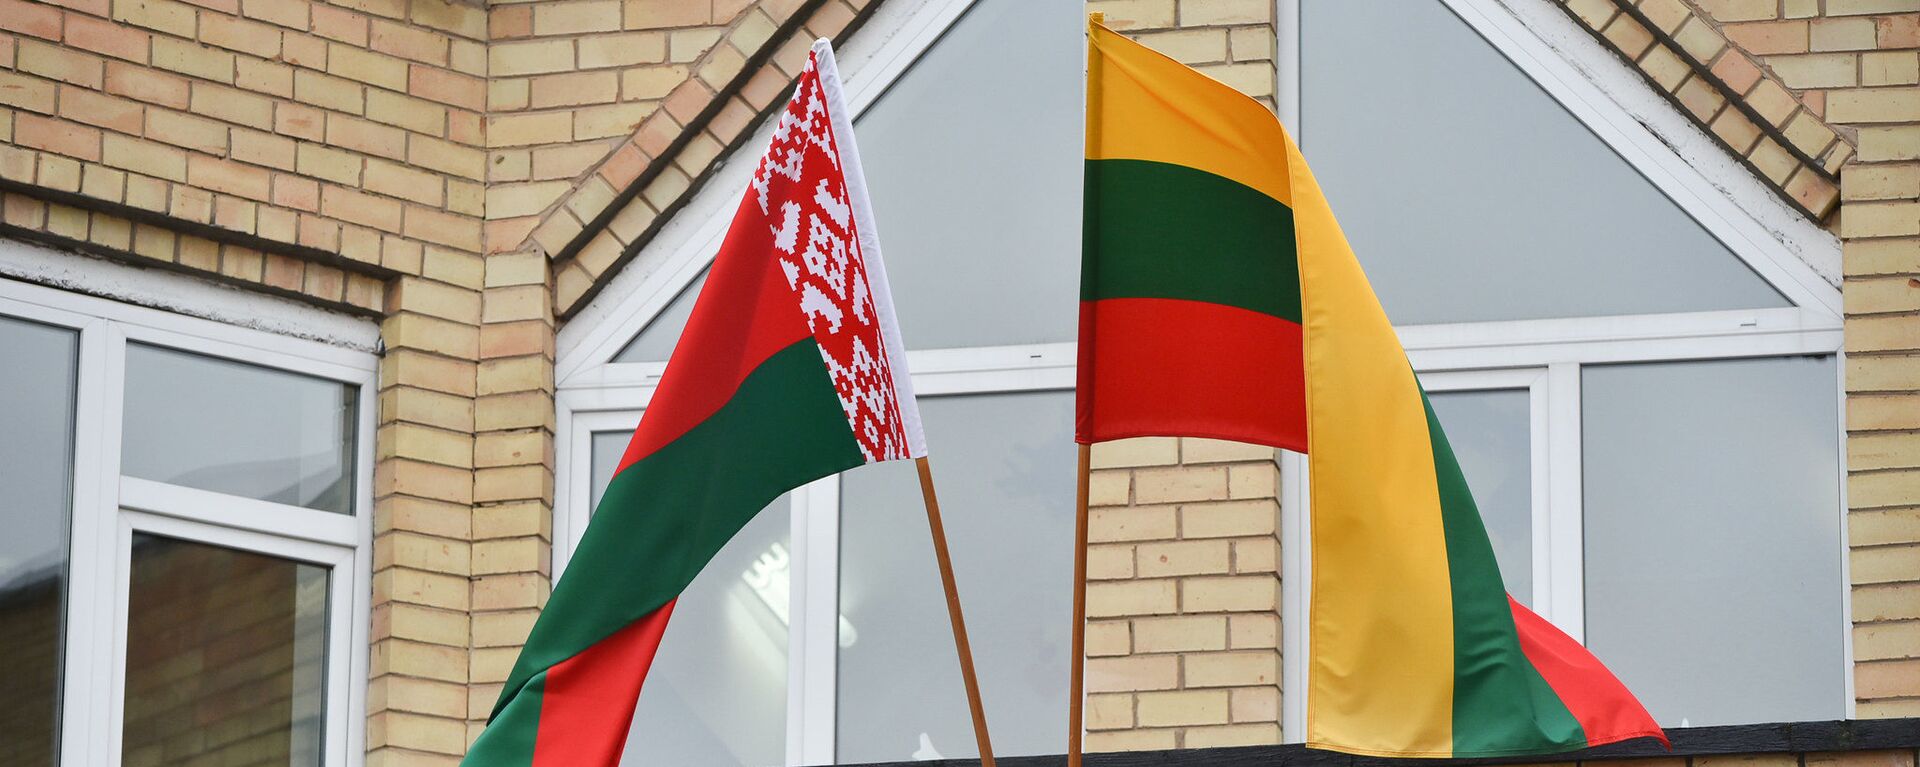 Флаги Литвы и Белоруссии, архивное фото - Sputnik Литва, 1920, 26.05.2021